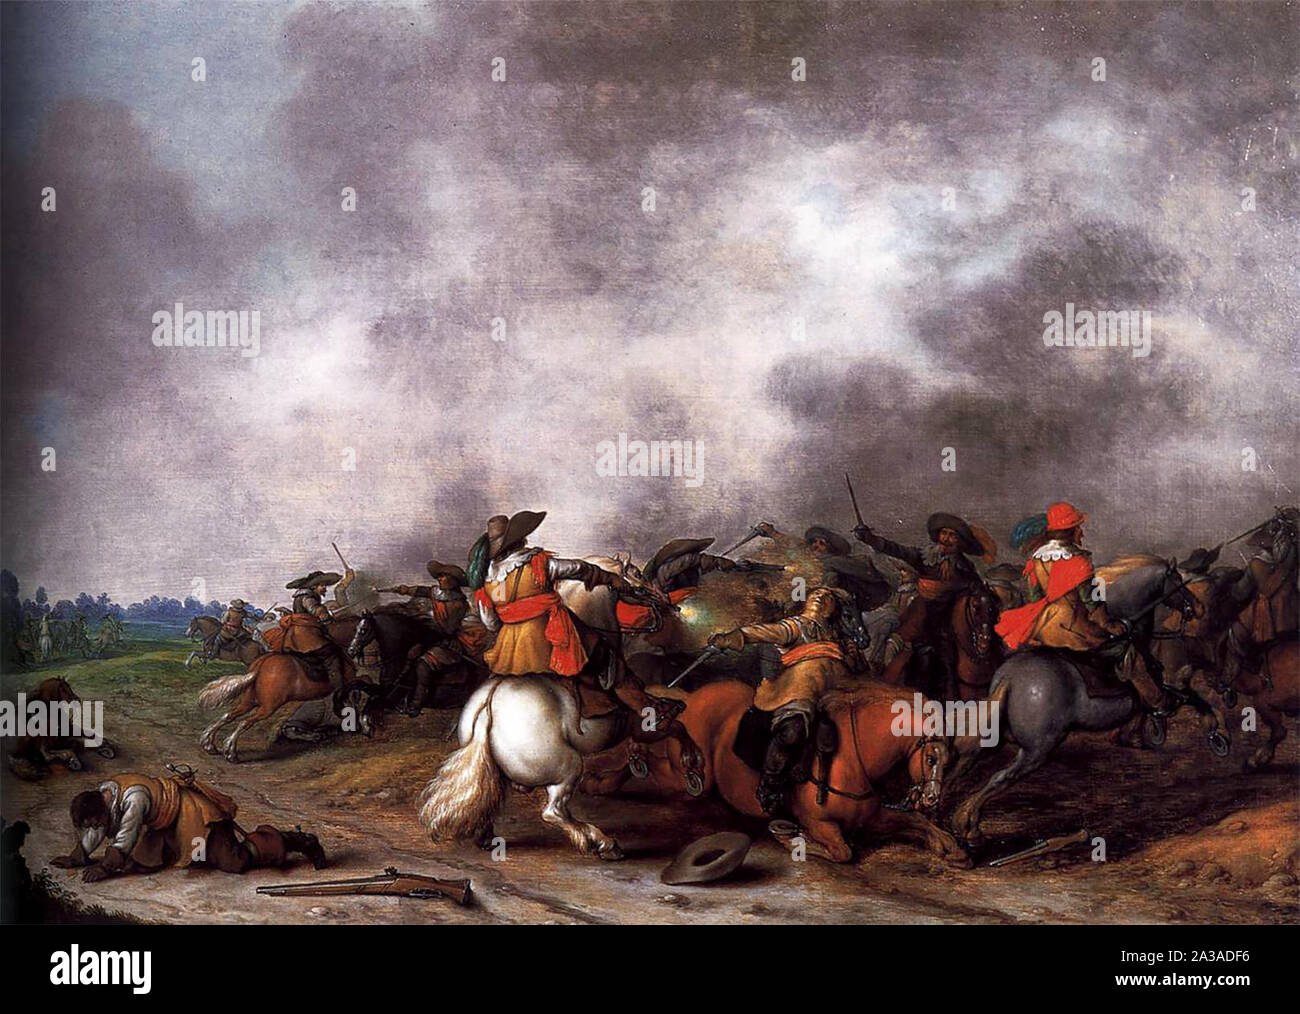 Batalla de caballería - Palamedesz Palamedes, circa 1628 Foto de stock